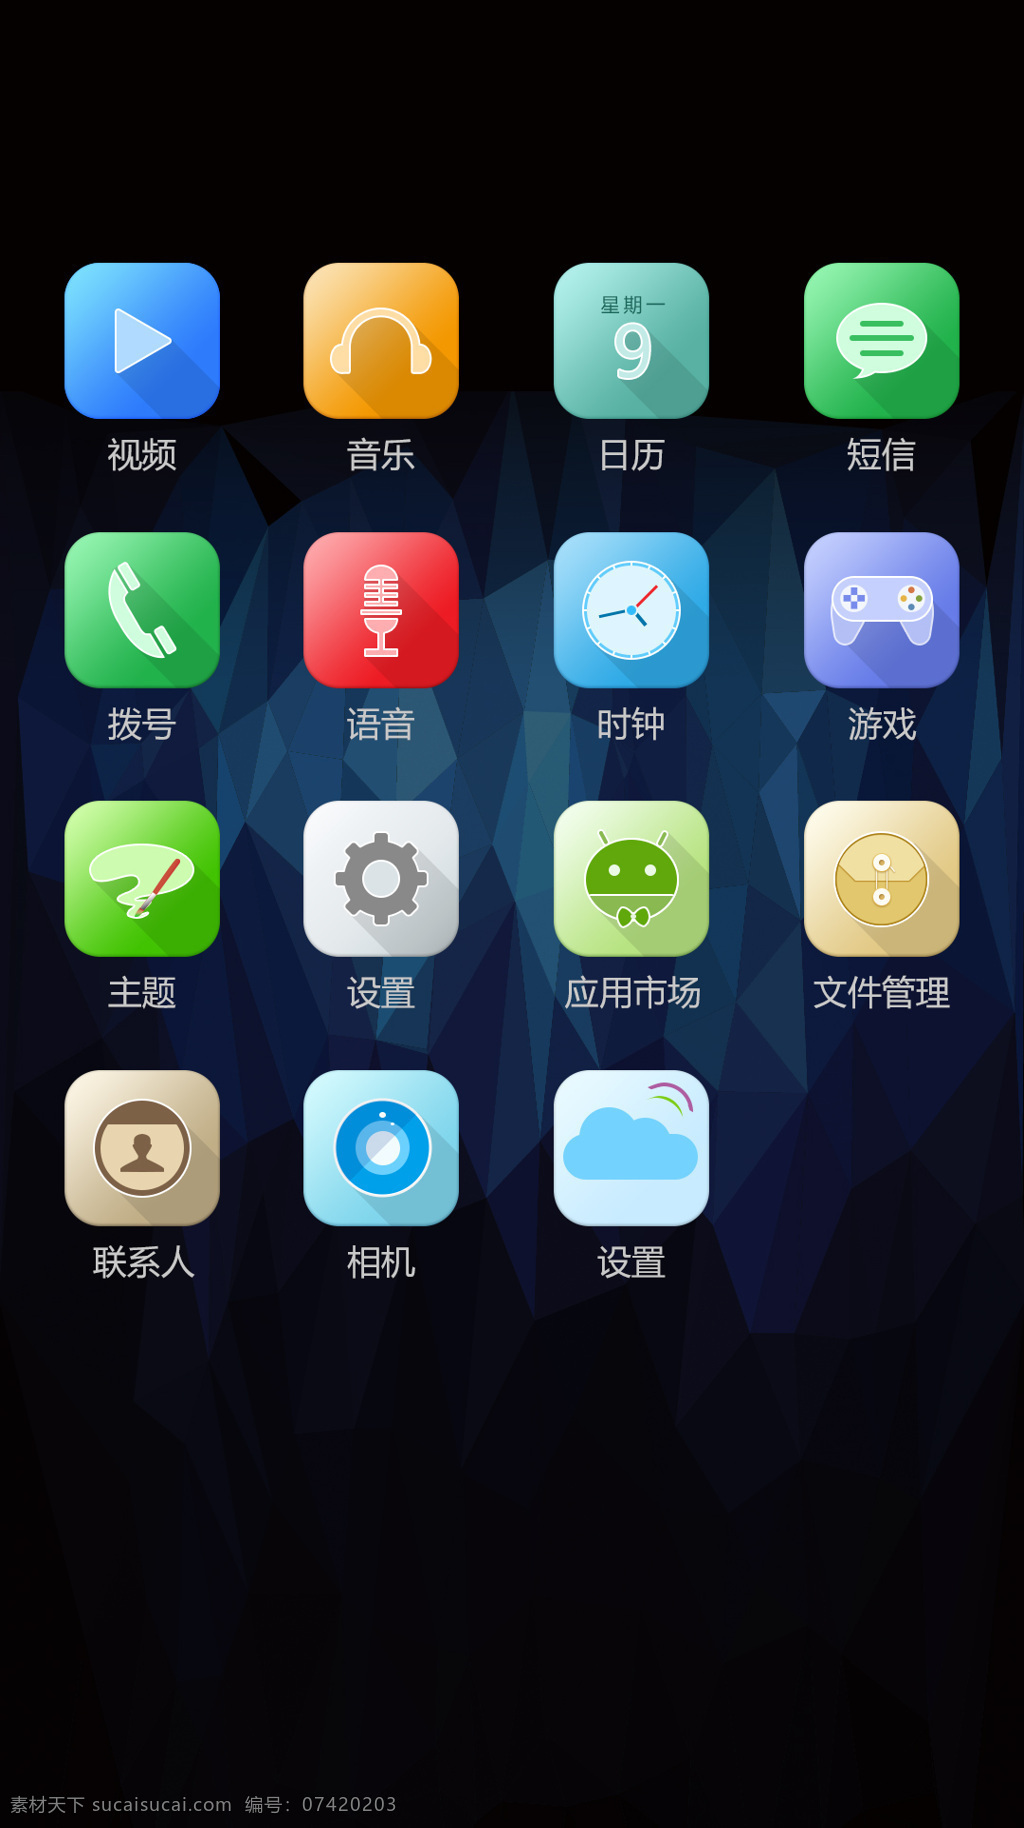 华为 主题 图标 icon ui 图标设计 华为主题图标 andriod 移动界面设计 手机 app app图标